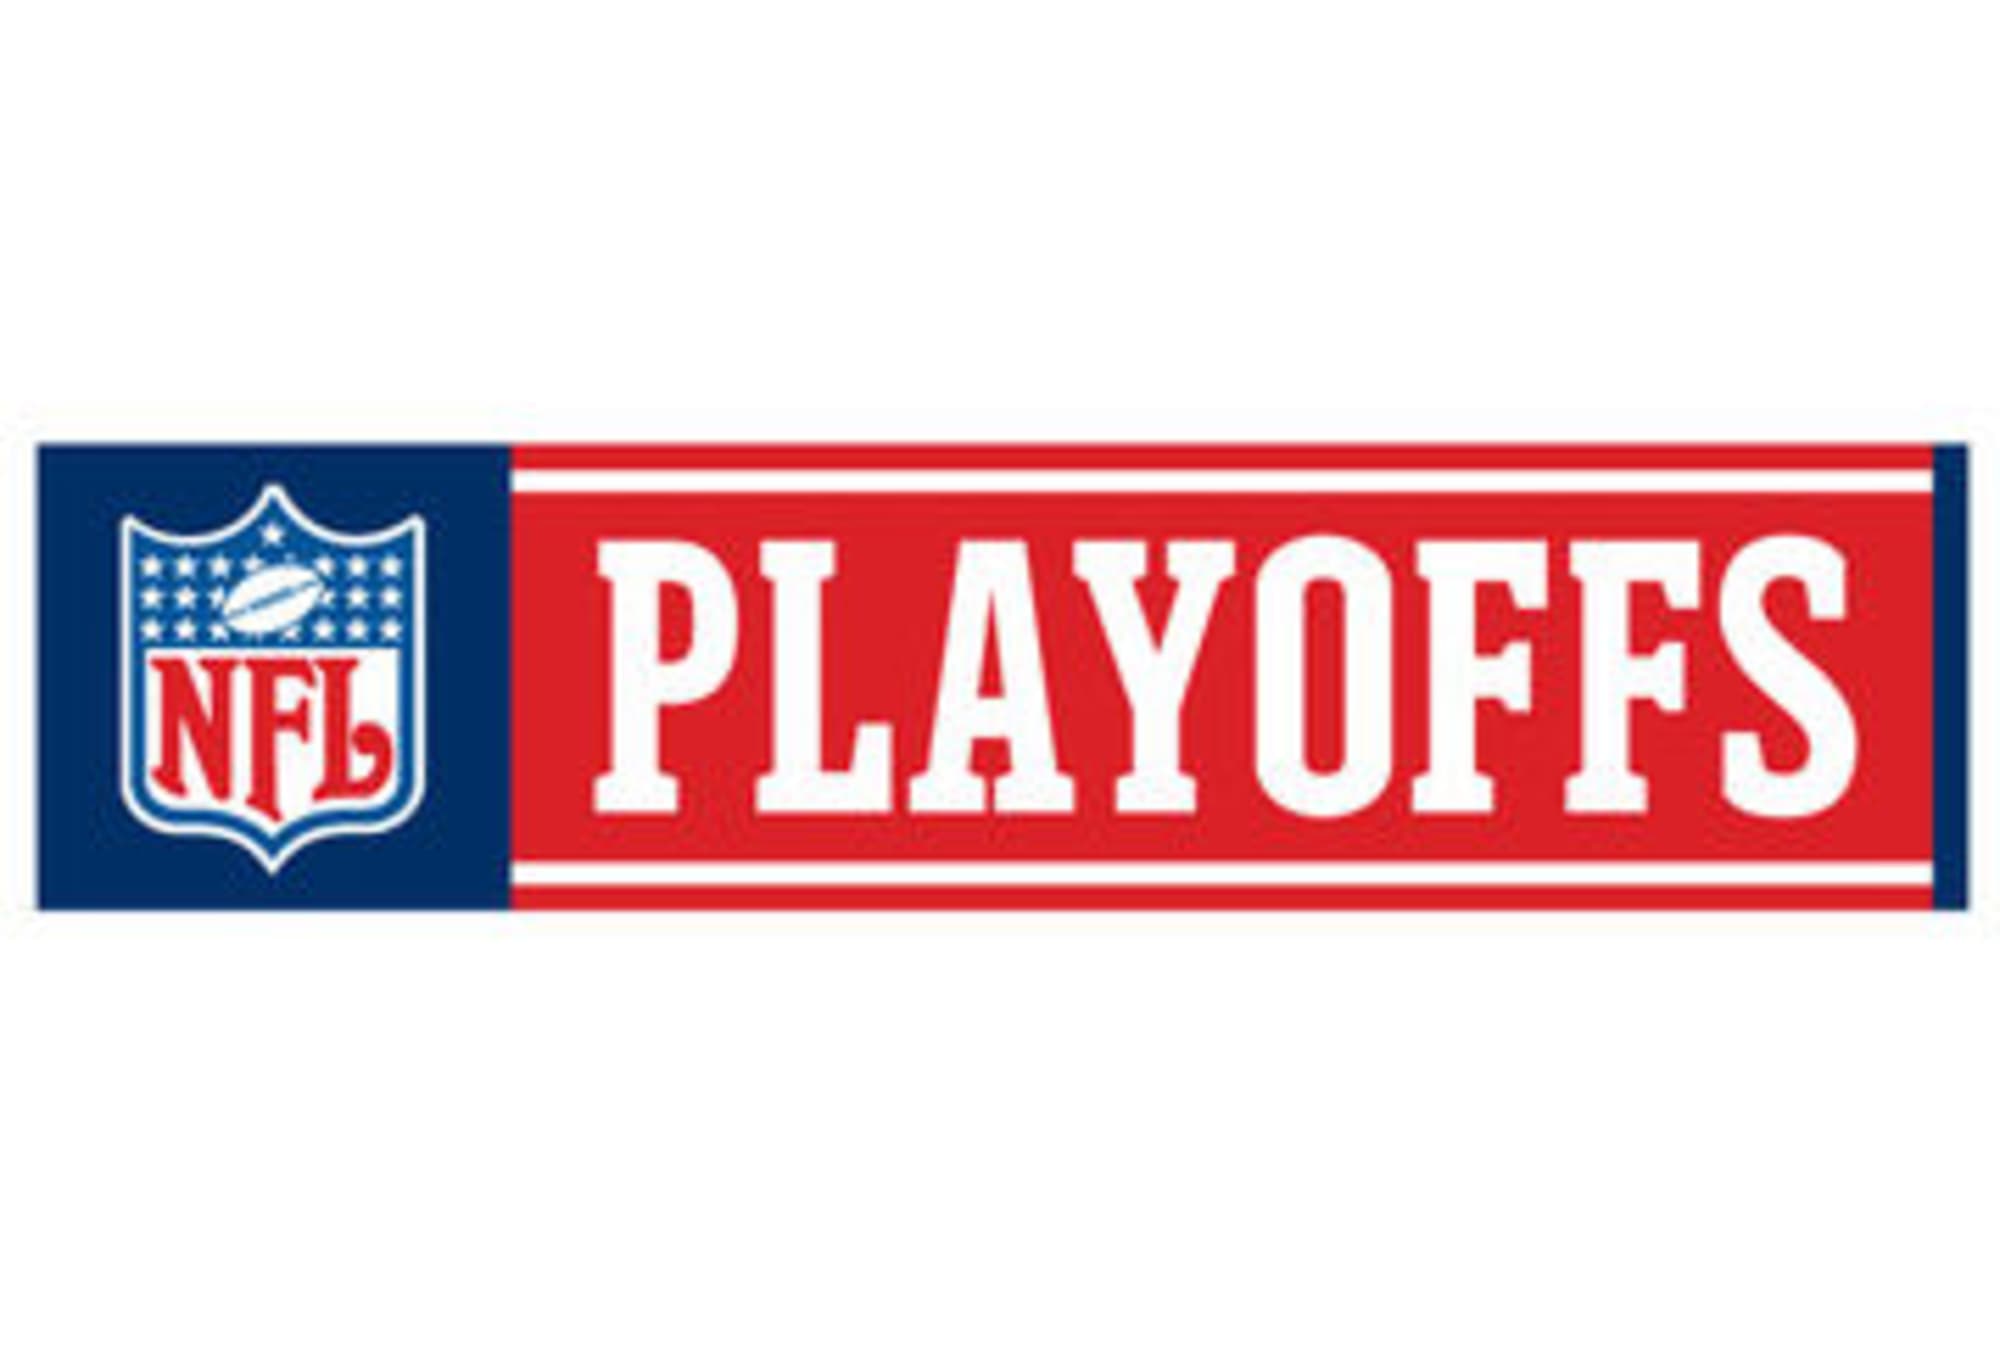 NFL Playoffs Bracket: Road to Super Bowl XLVII